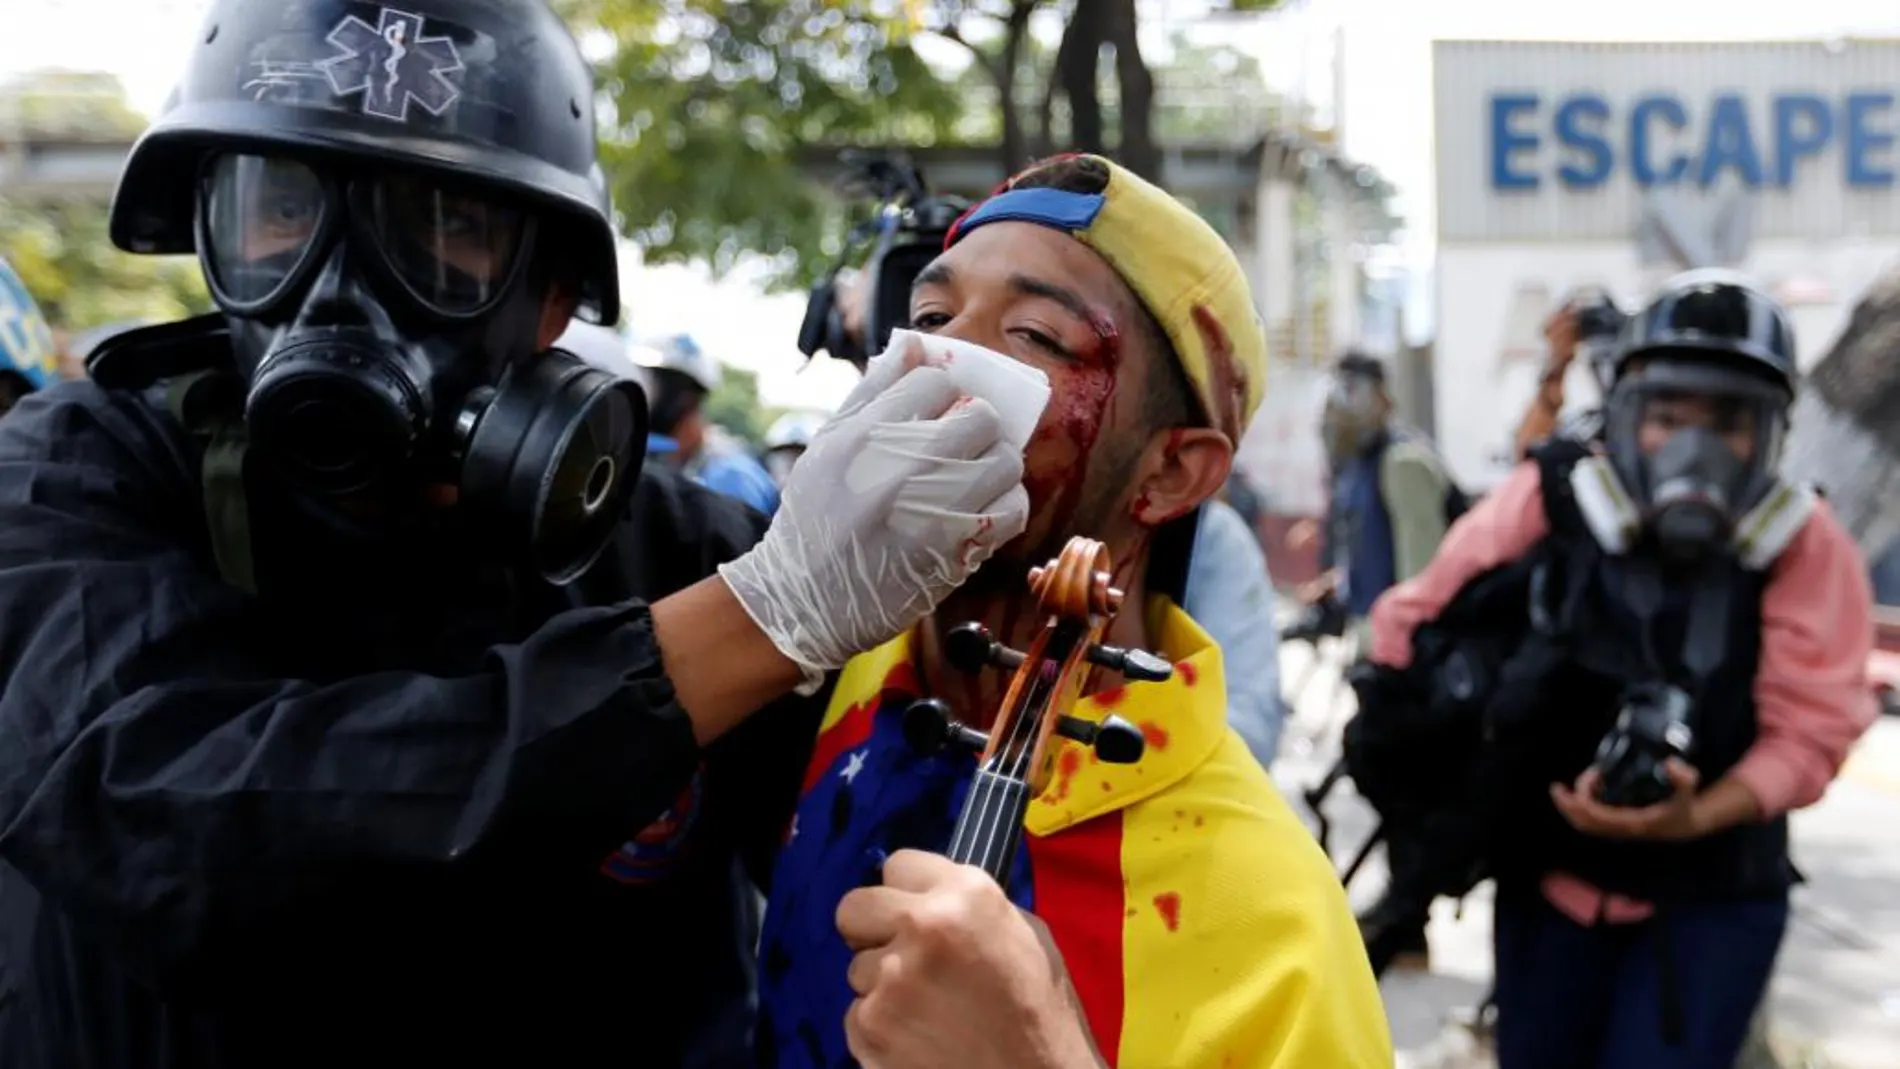 Wuilly Arteaga, de 23 años, suele tocar su violín en las manifestaciones contra el Gobierno, en Caracas. El sábado, sin embargo, recibió varios perdigonazos en la cara. El músico dijo que seguirá saliendo a la calle a tocar